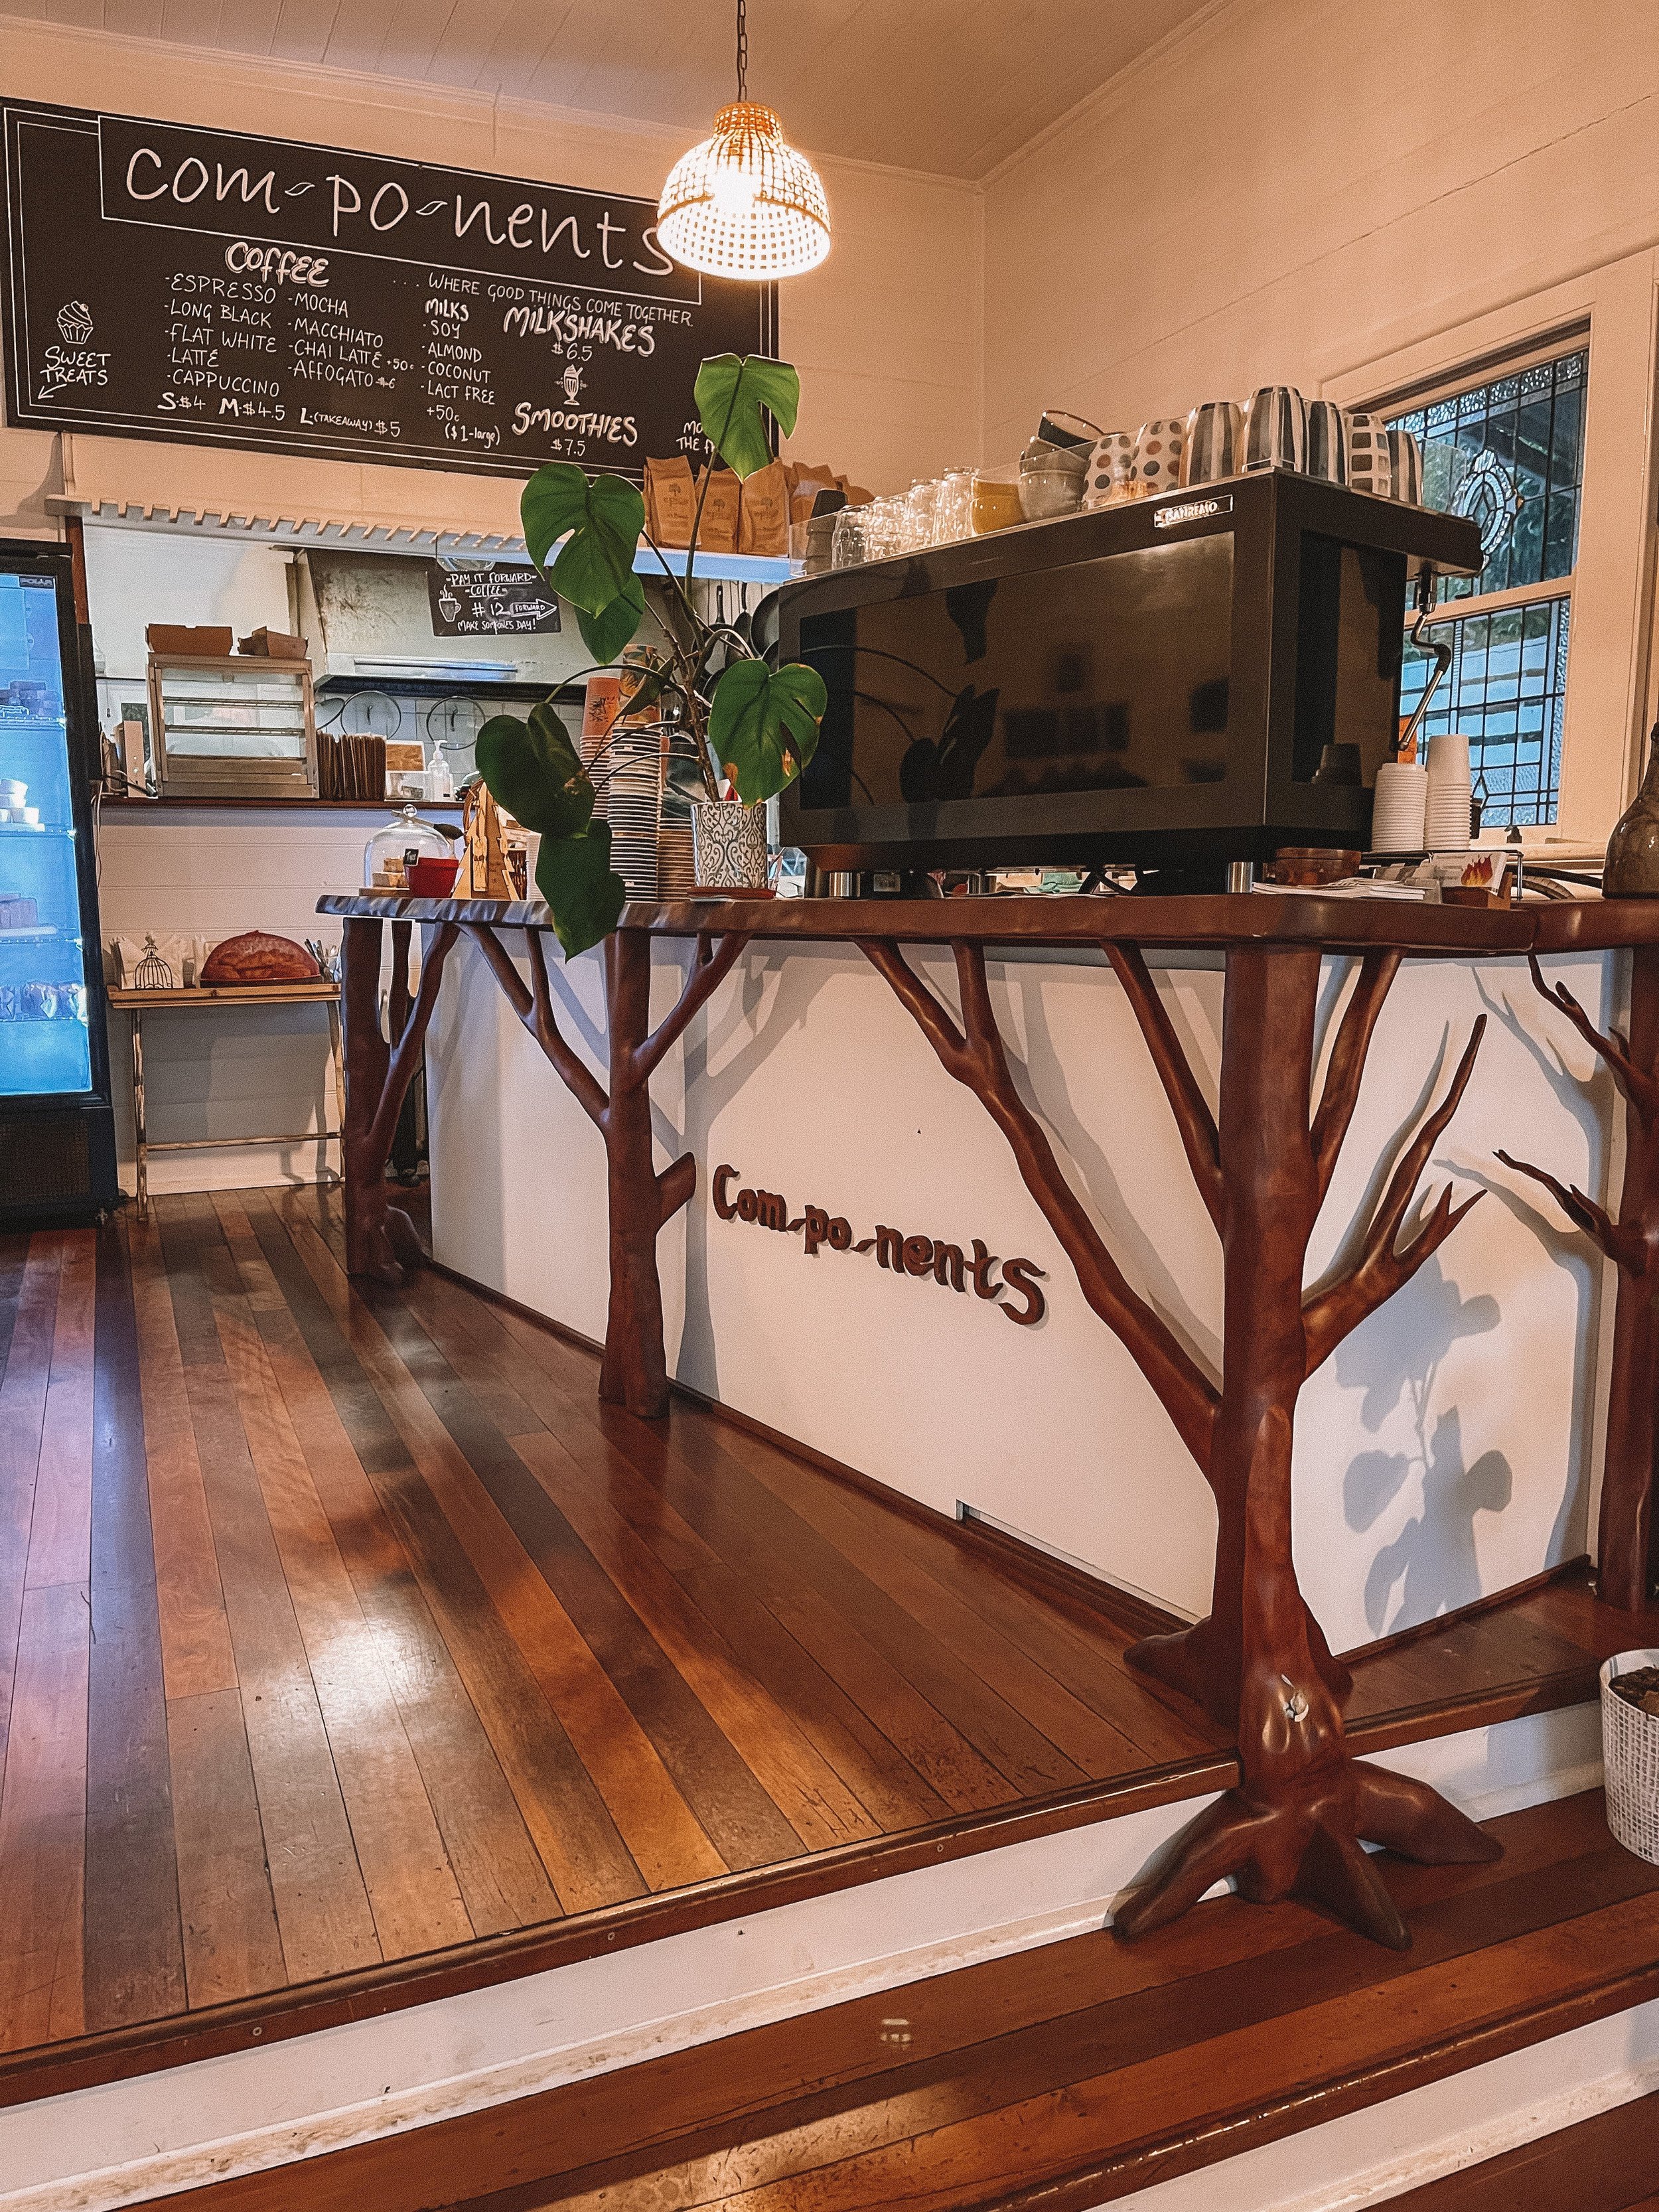 Inside Components Cafe - Dorrigo - New South Wales (NSW) - Australia